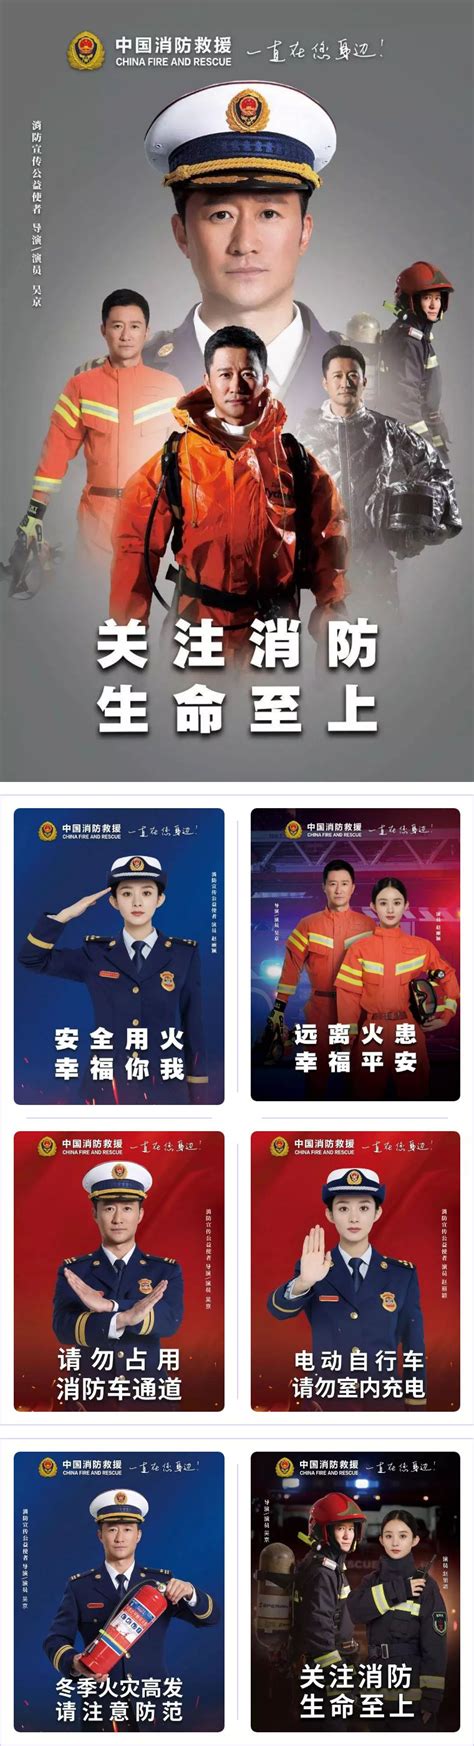 2019消防安全宣传月图片 消防安全宣传月高清素材图片2019_万年历